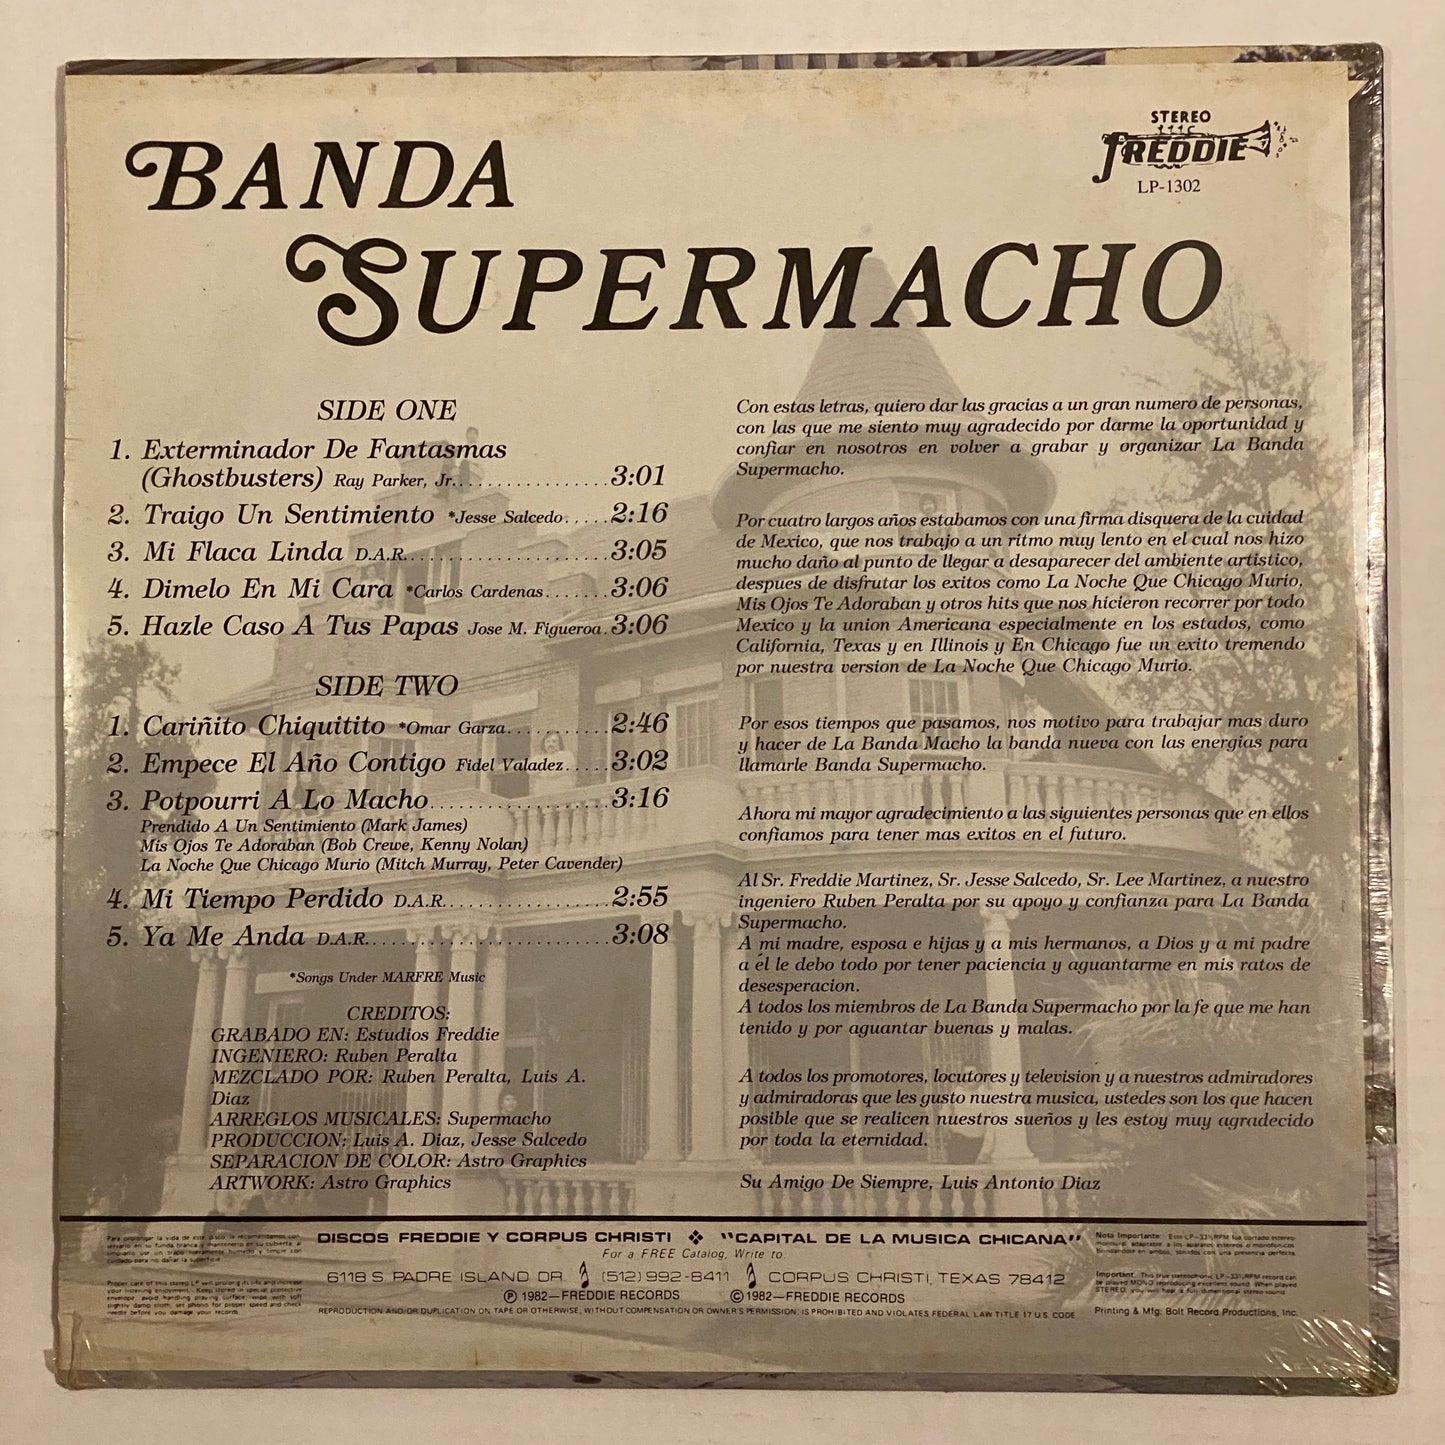 Banda Supermacho ‎– Exterminador de Fantasmas (Ghost Busters) (Vinyl)